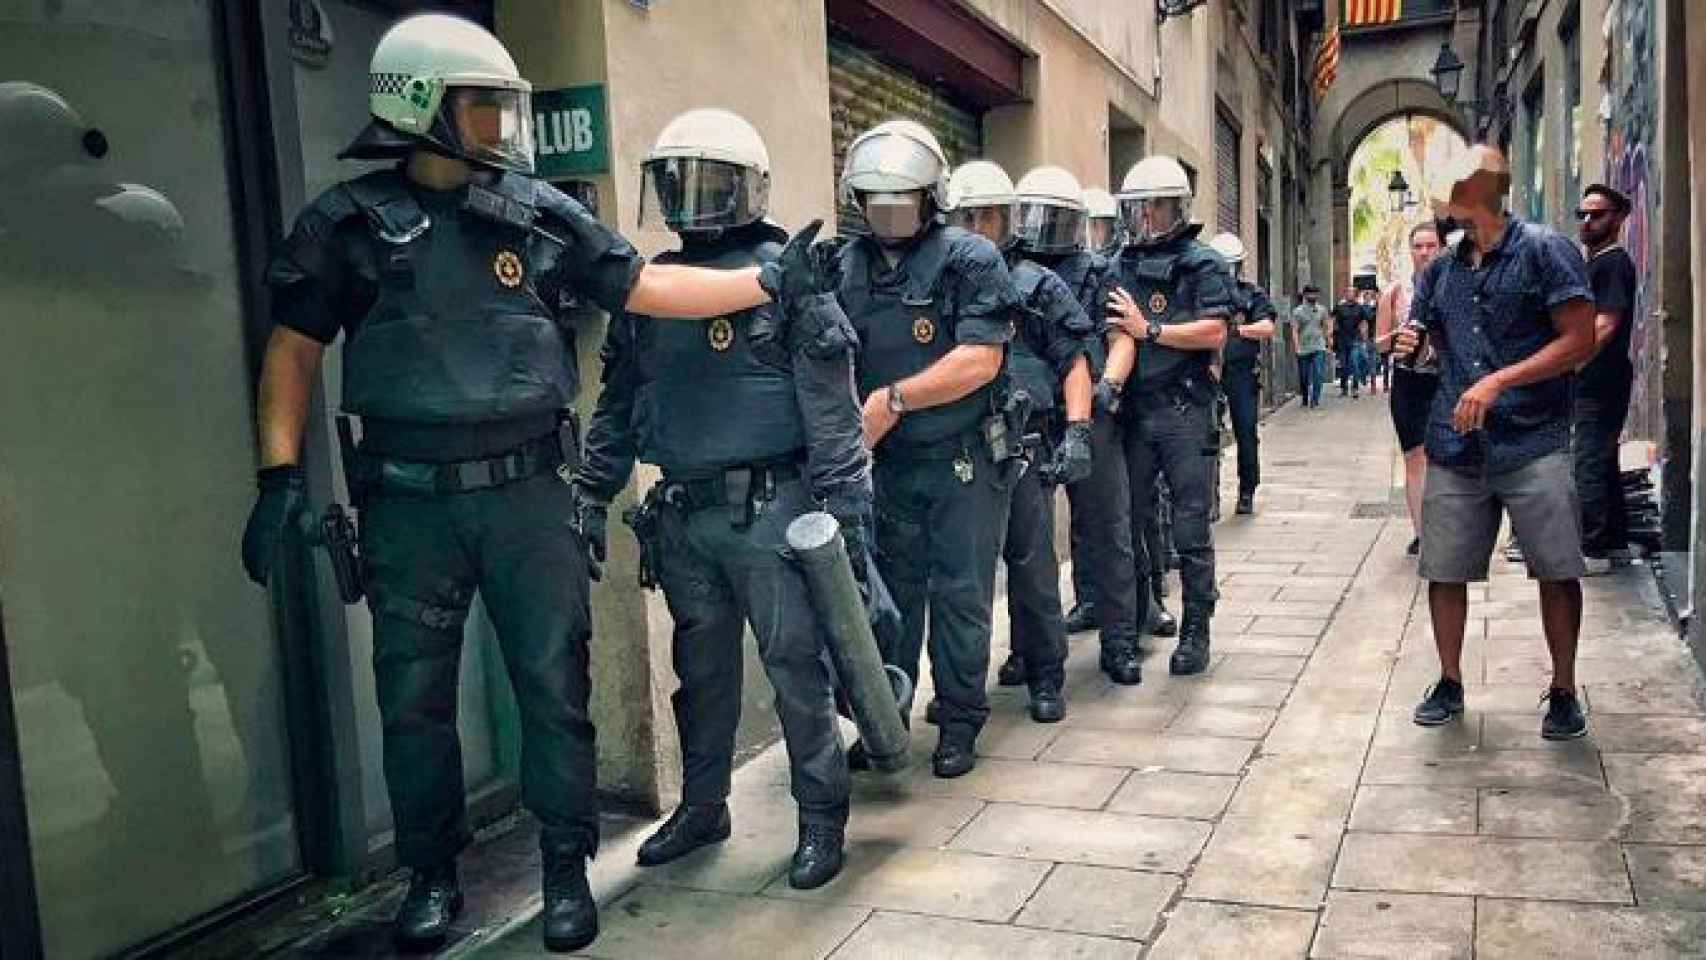 Agentes de la Unidad de Apoyo Policial de la Guardia Urbana, durante una actuación en el casco antiguo de Barcelona / Instagram